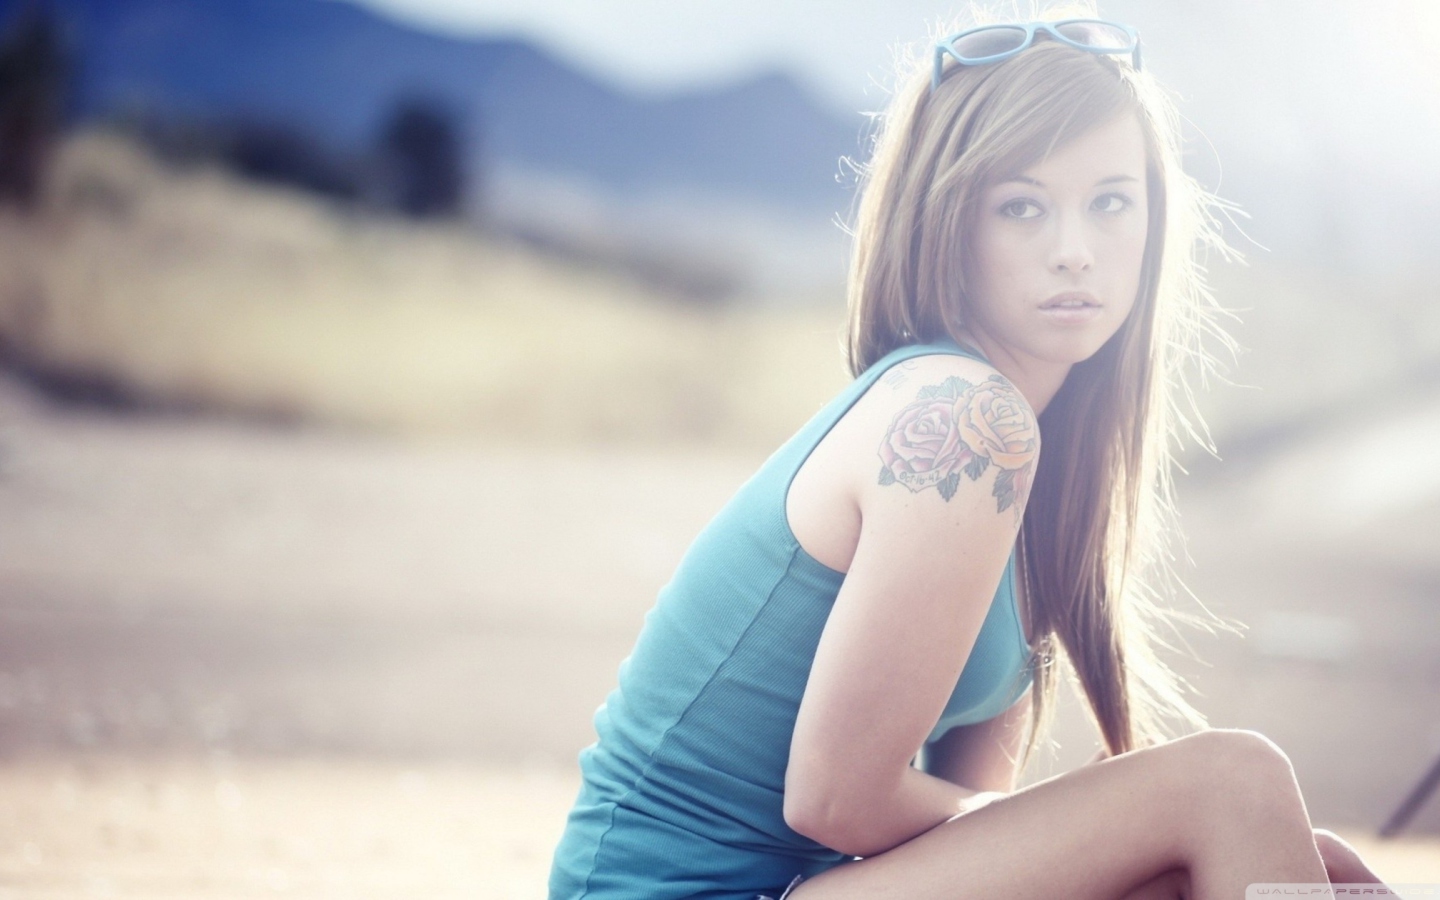 Обои Beautiful Girl With Long Blonde Hair And Rose Tattoo 1440x900